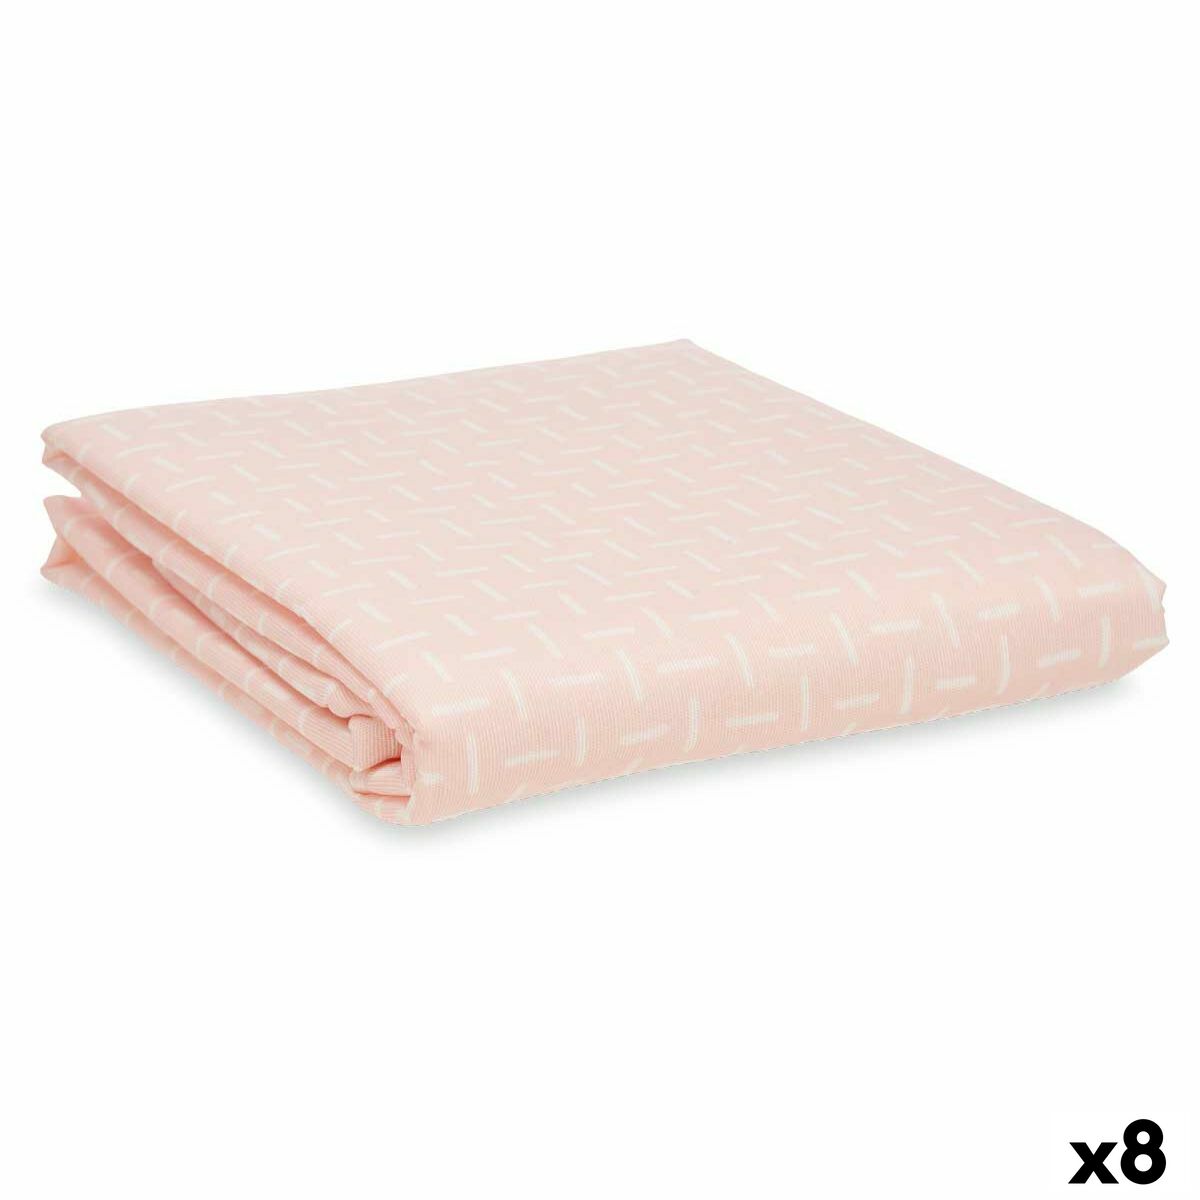 Cover Til Strygebræt Pink 140 x 50 cm (8 enheder)